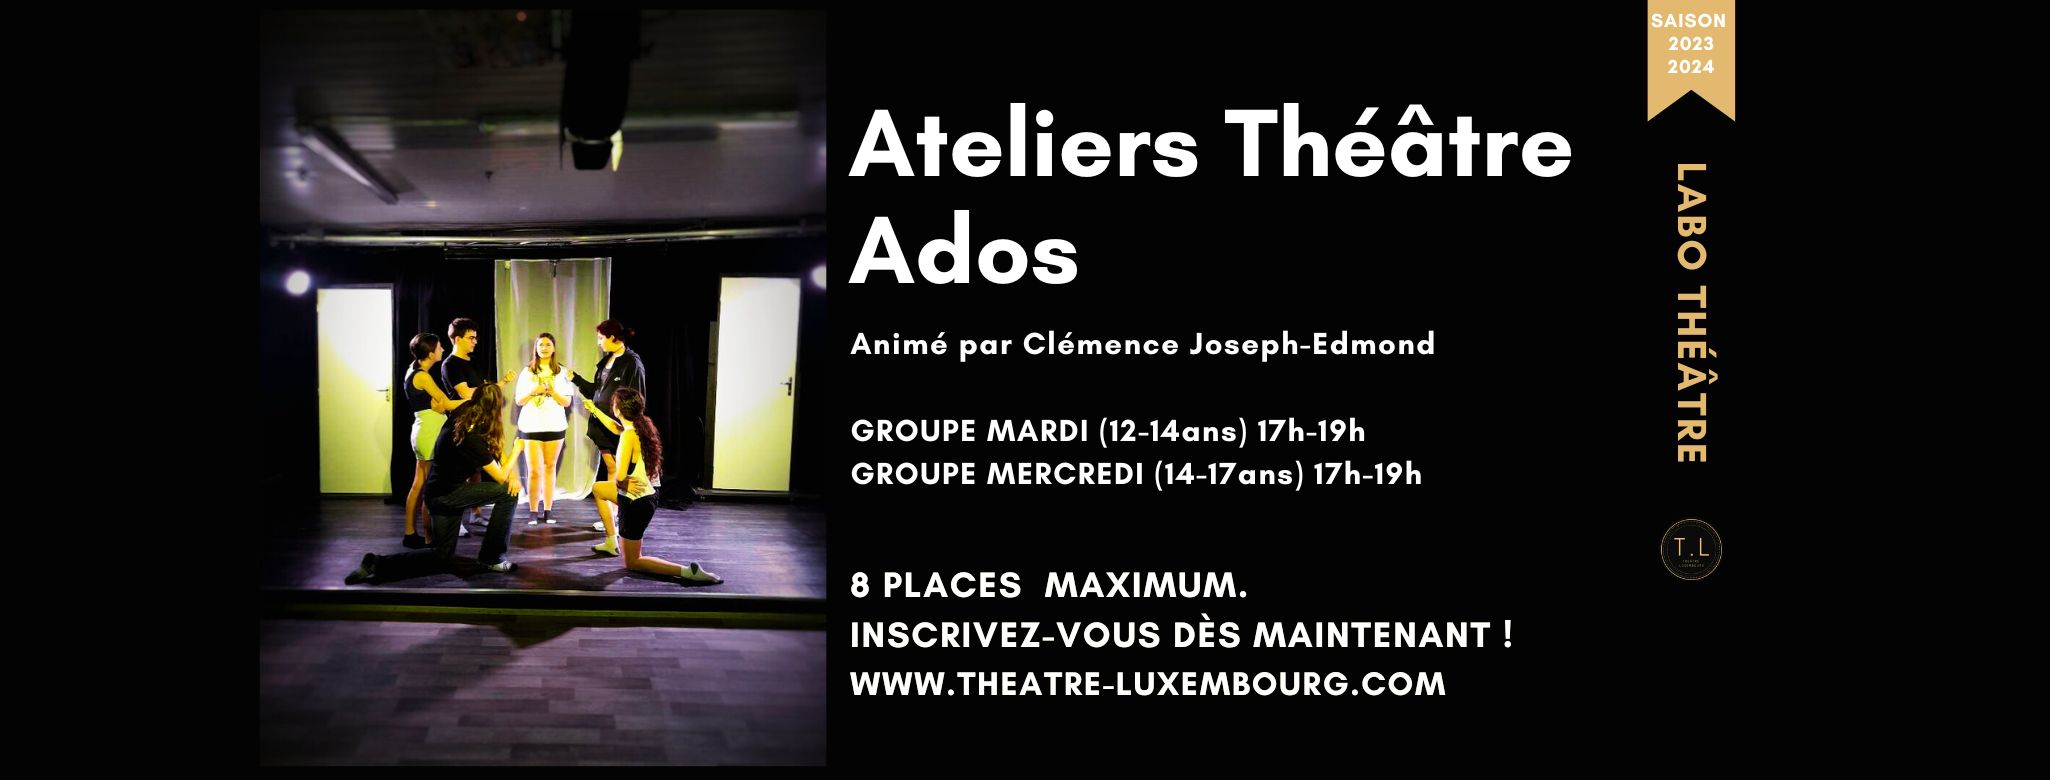 Ateliers Théâtre Ados